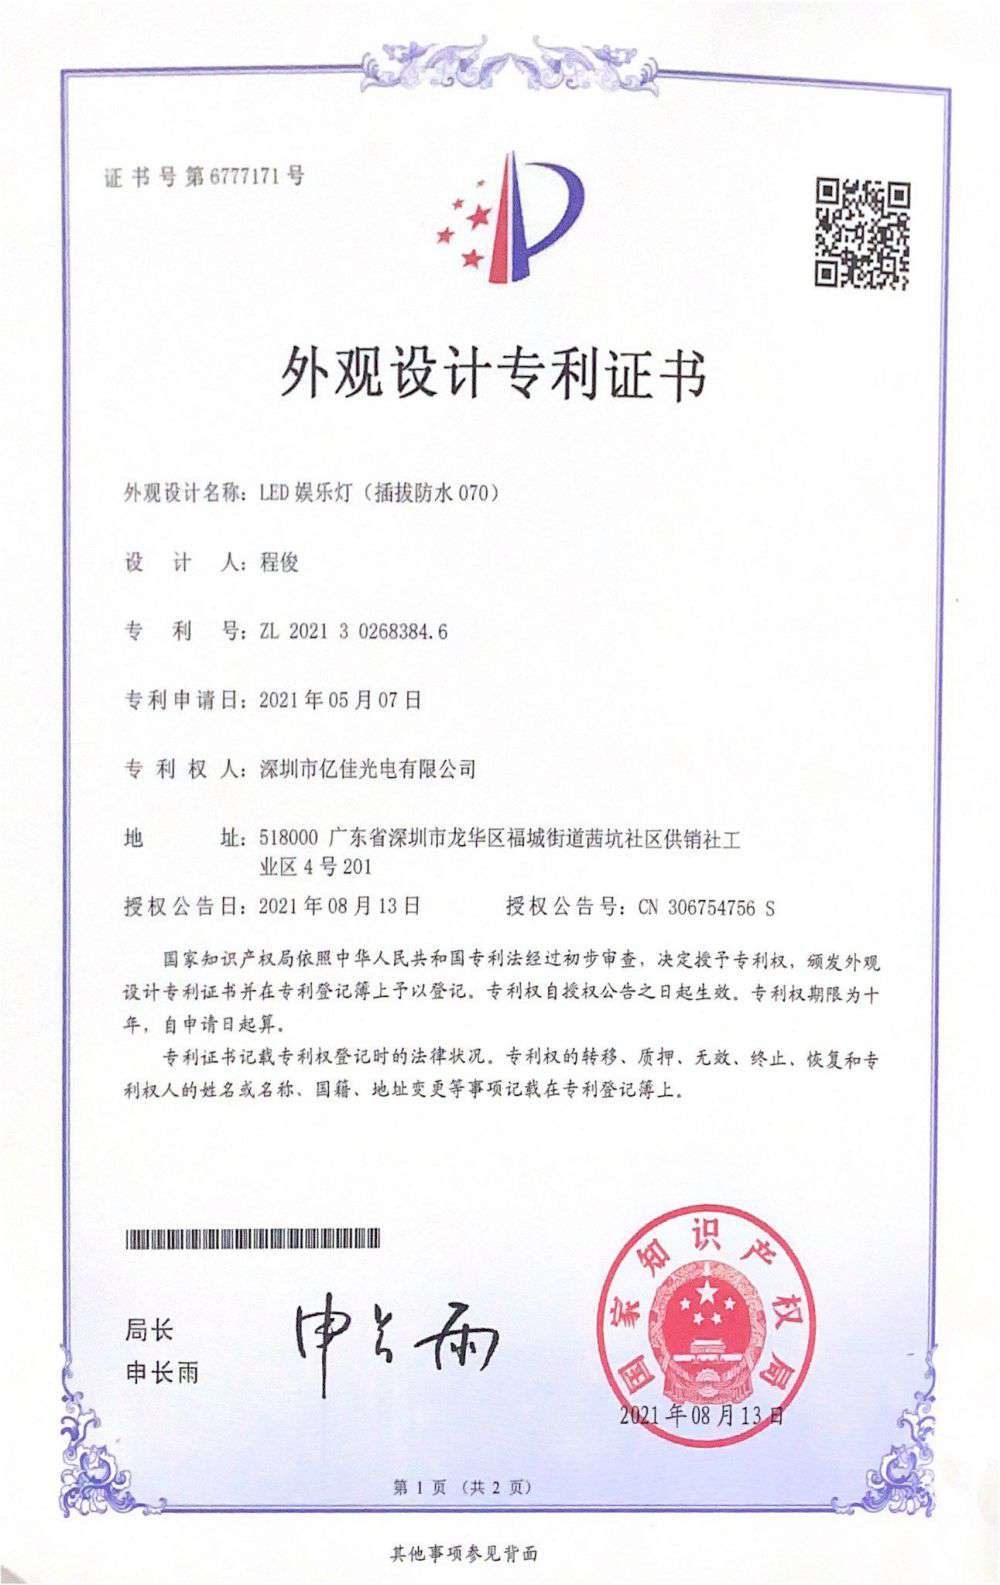 深圳市k8凯发官网光电有限公司LED娱乐灯070获得外观设计专利证书